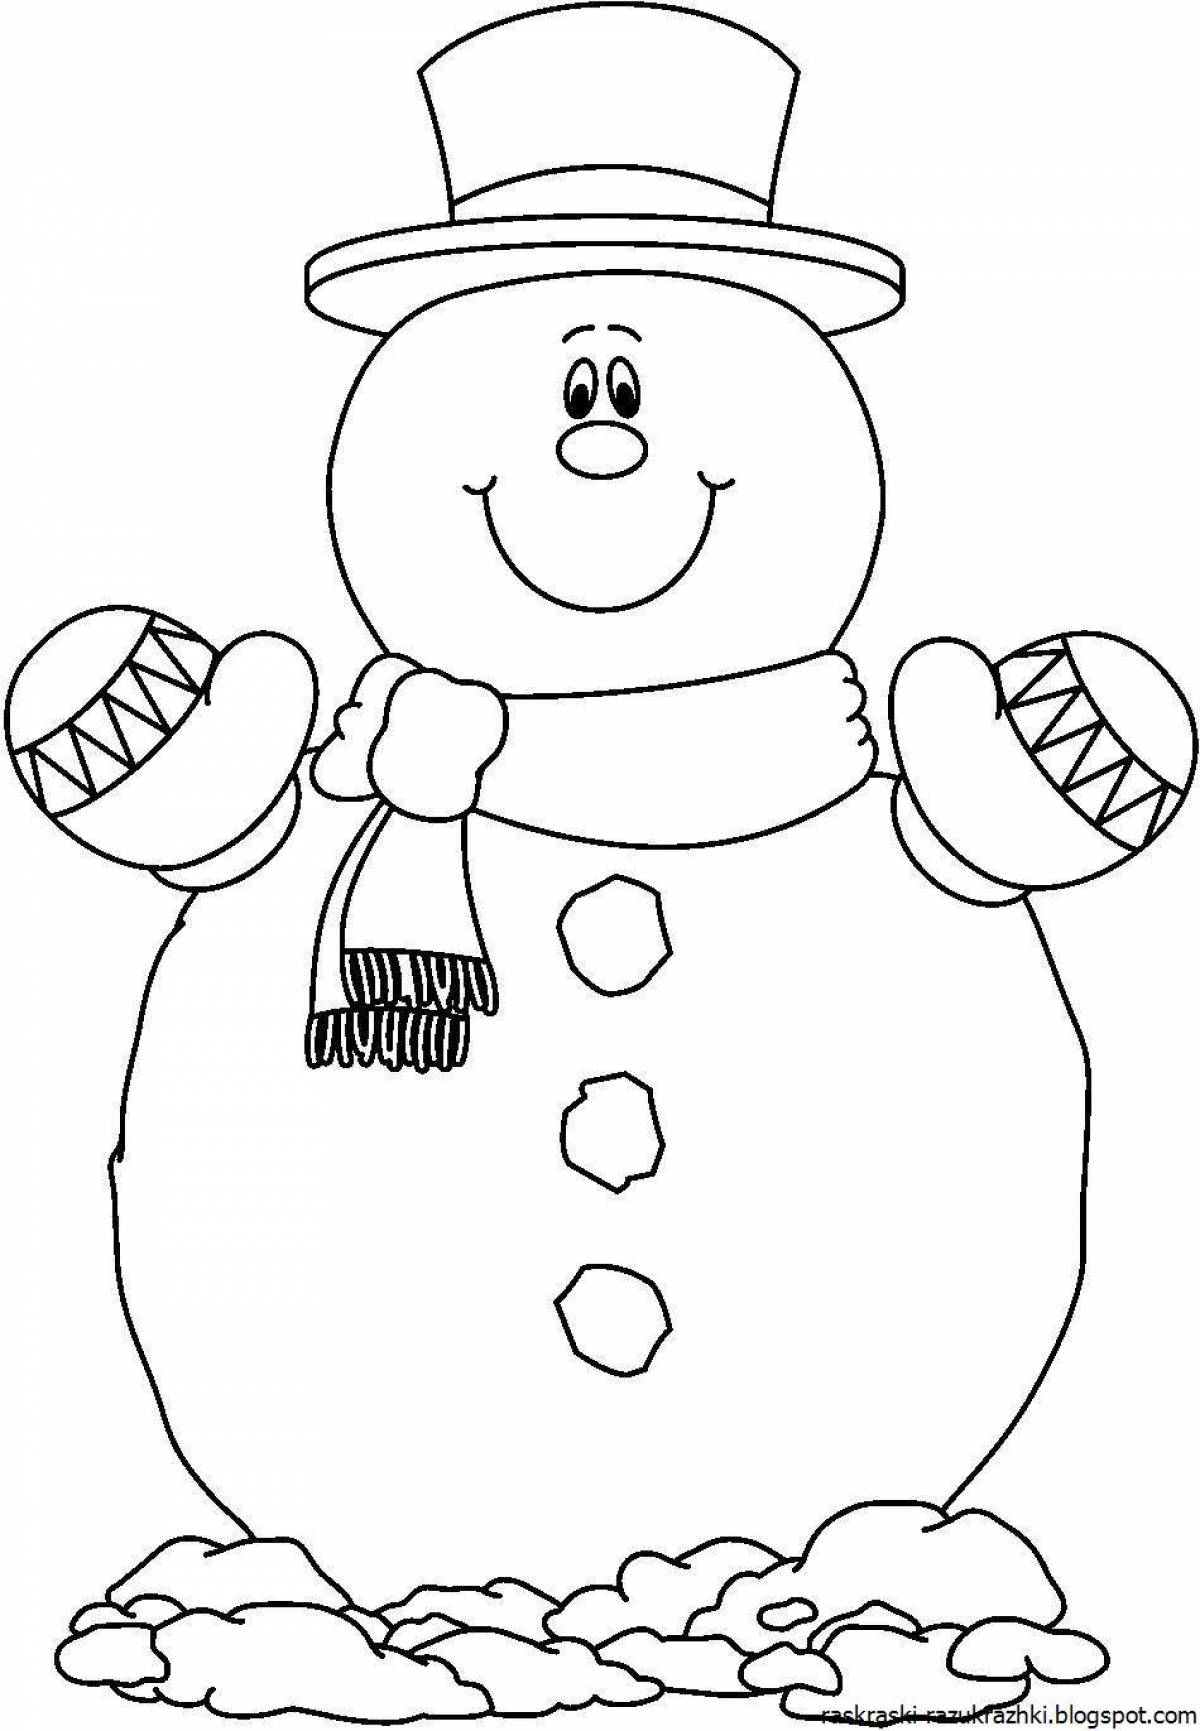 Красивая страница раскраски снеговика для детей